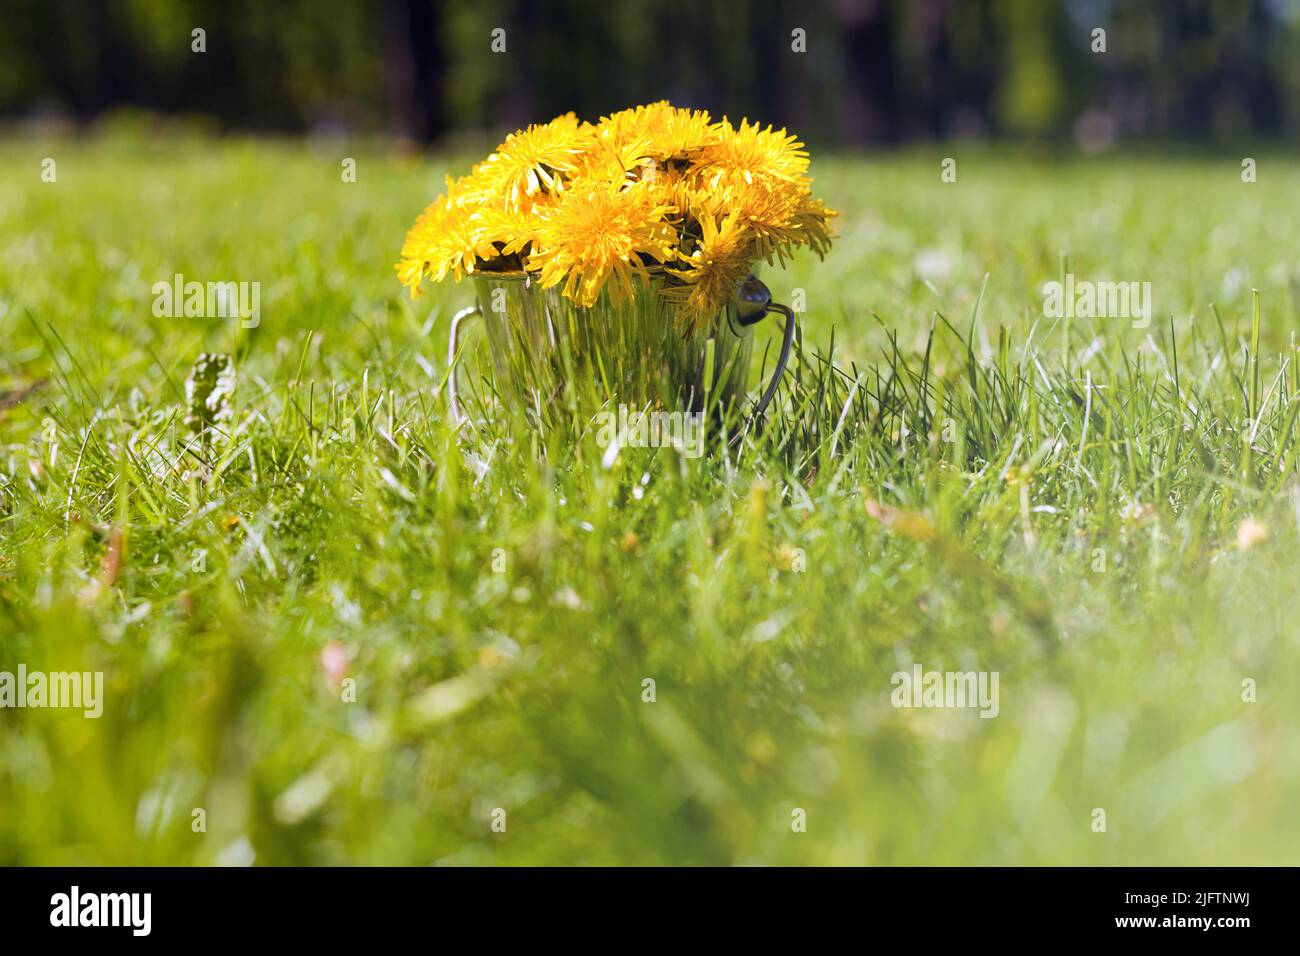 Am Eimer auf dem Gras stehen Dandelionen. Bouquet von gelben Dandelion Blumen an sonnigen Sommertag Stockfoto